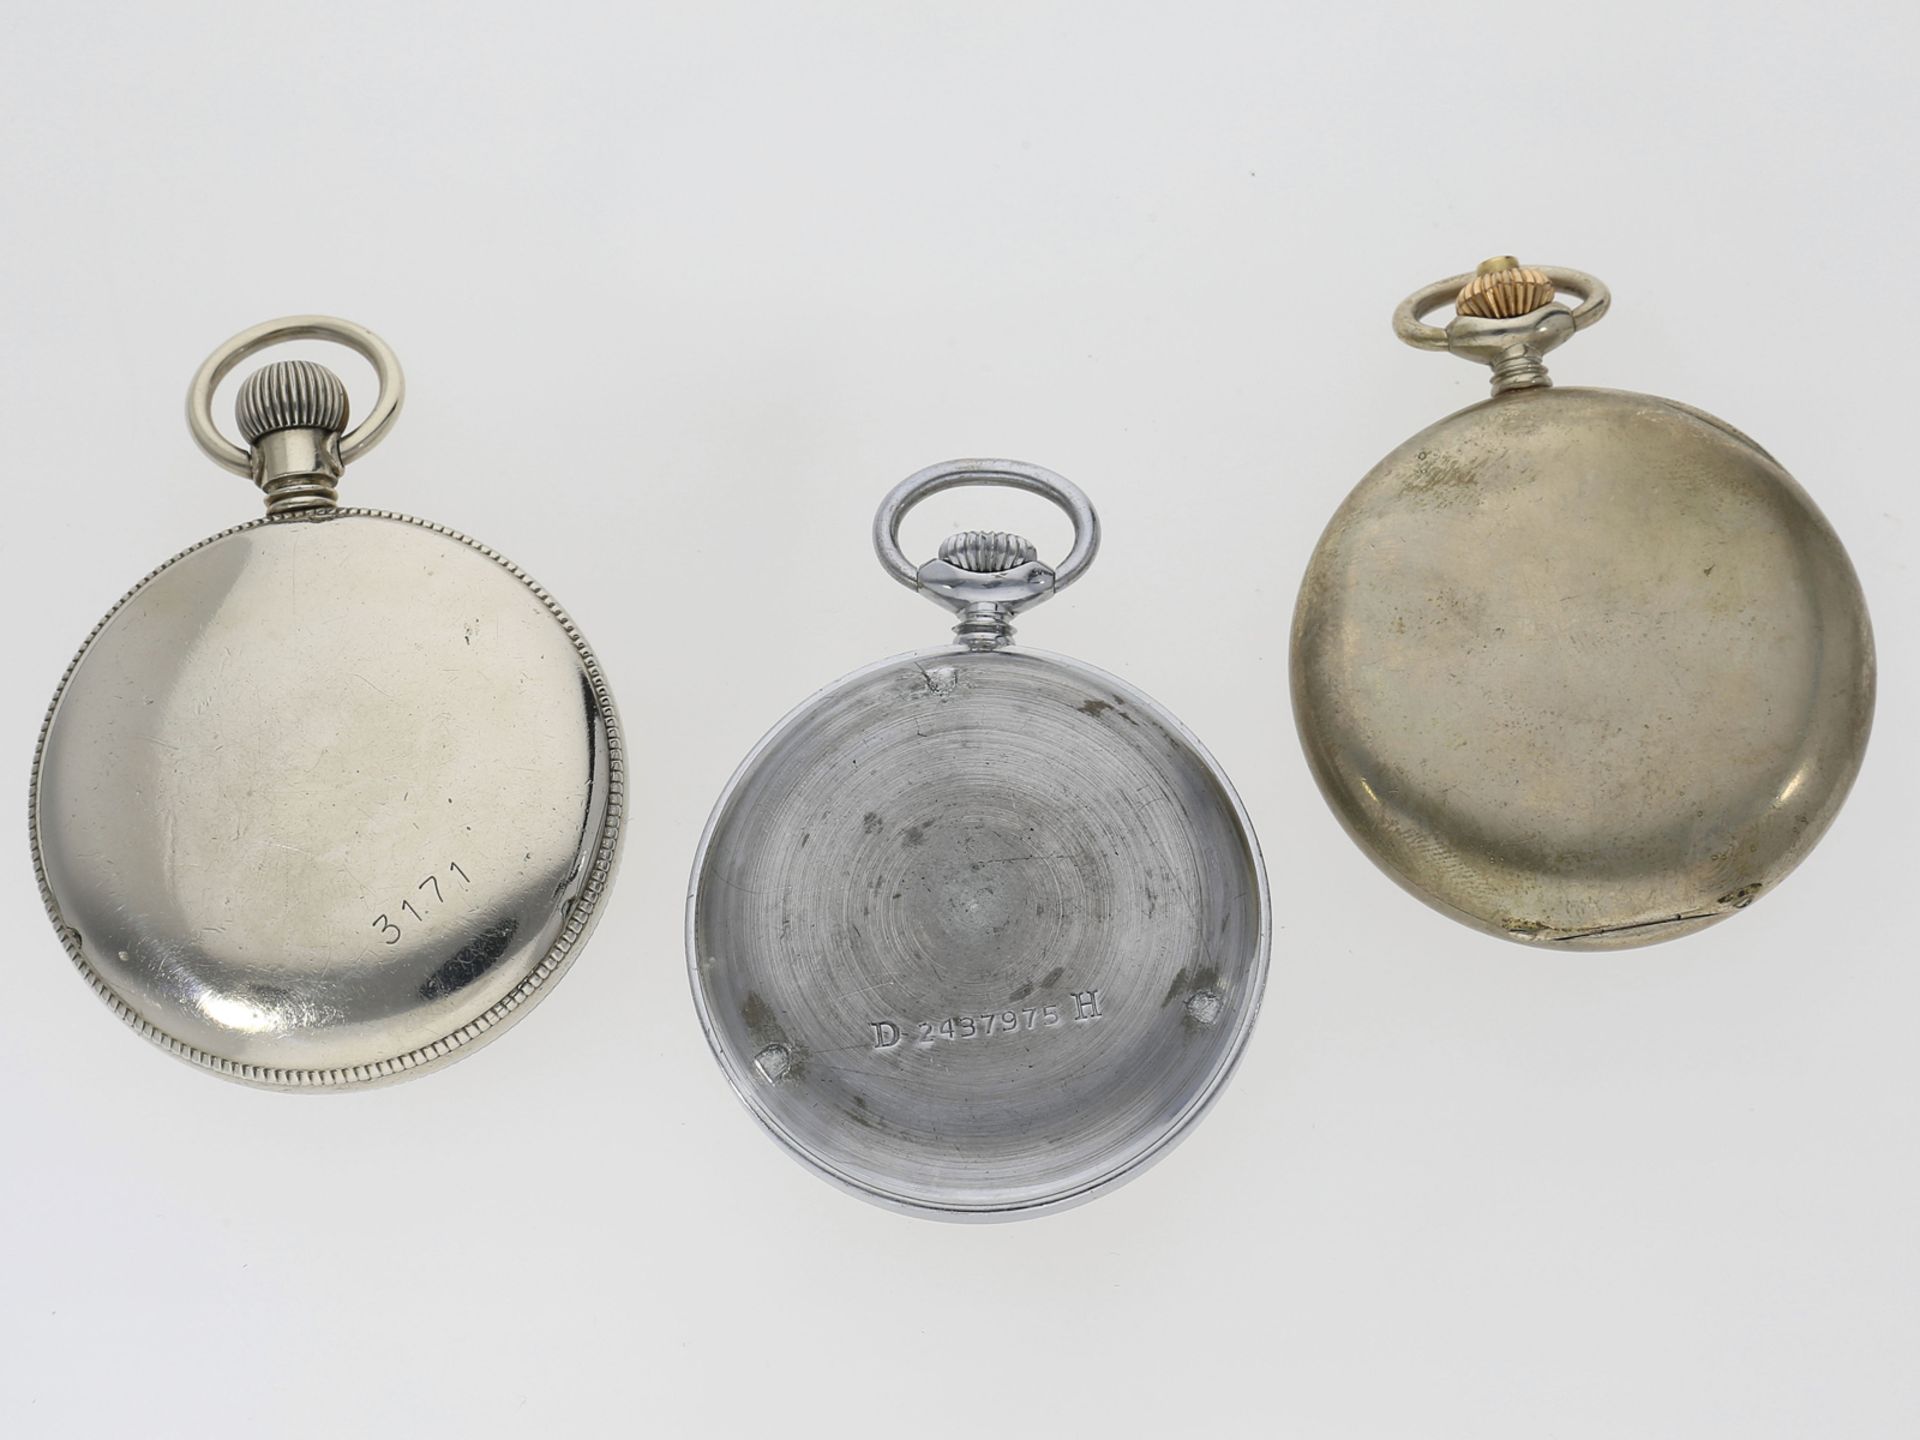 Taschenuhr: Konvolut von 3 seltenen, deutschen militärischen Taschenuhren, dabei ein Chronograph Lün - Image 2 of 3